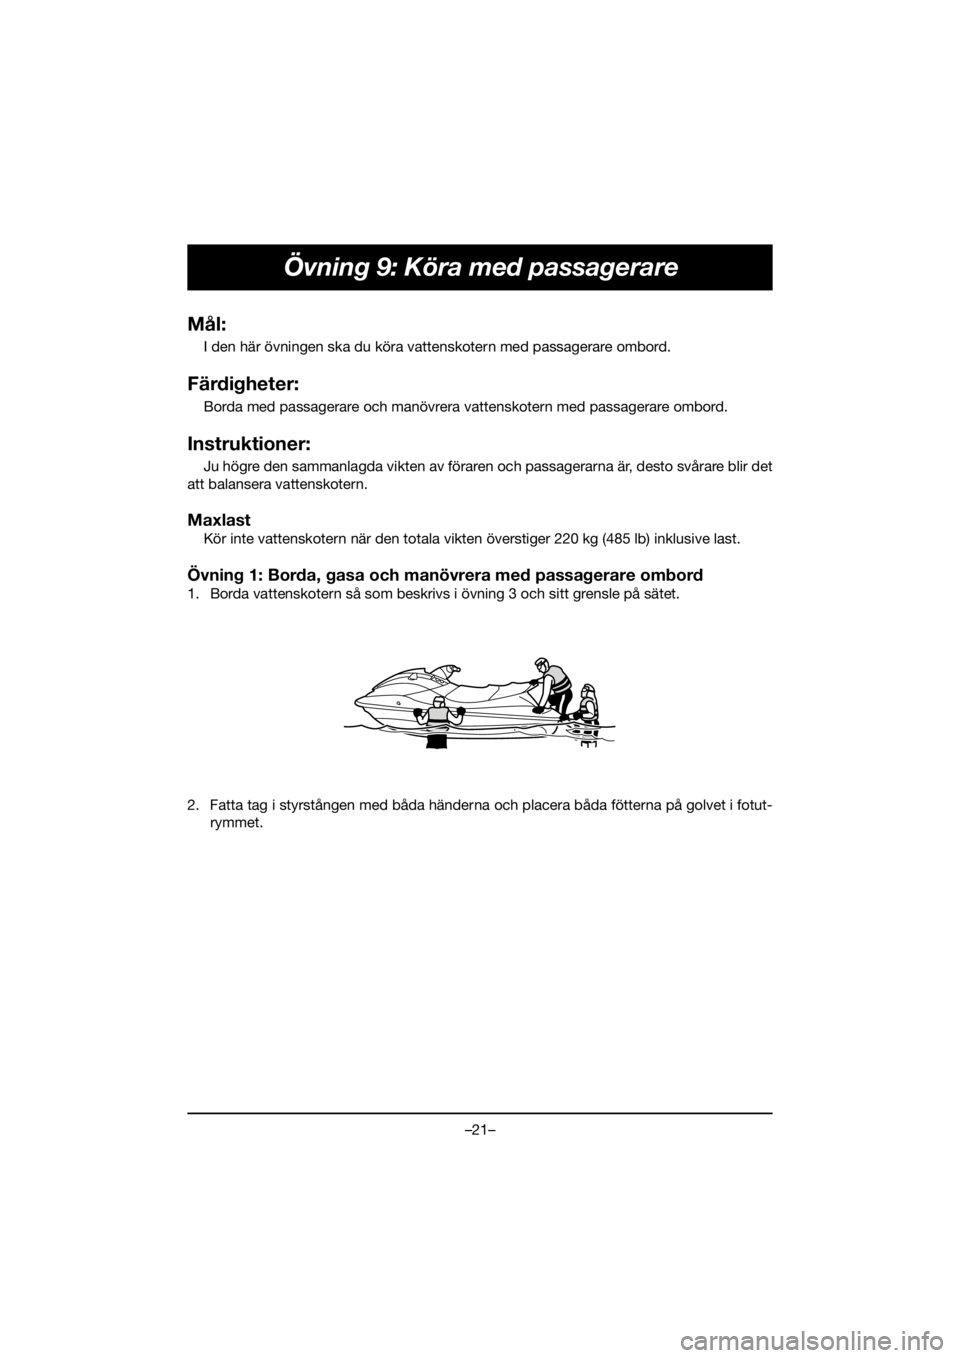 YAMAHA FJR1300 2020  Owners Manual –21–
Övning 9: Köra med passagerare
Mål:
I den här övningen ska du köra vattenskotern med passagerare ombord.
Färdigheter:
Borda med passagerare och manövrera vattenskotern med passagerare